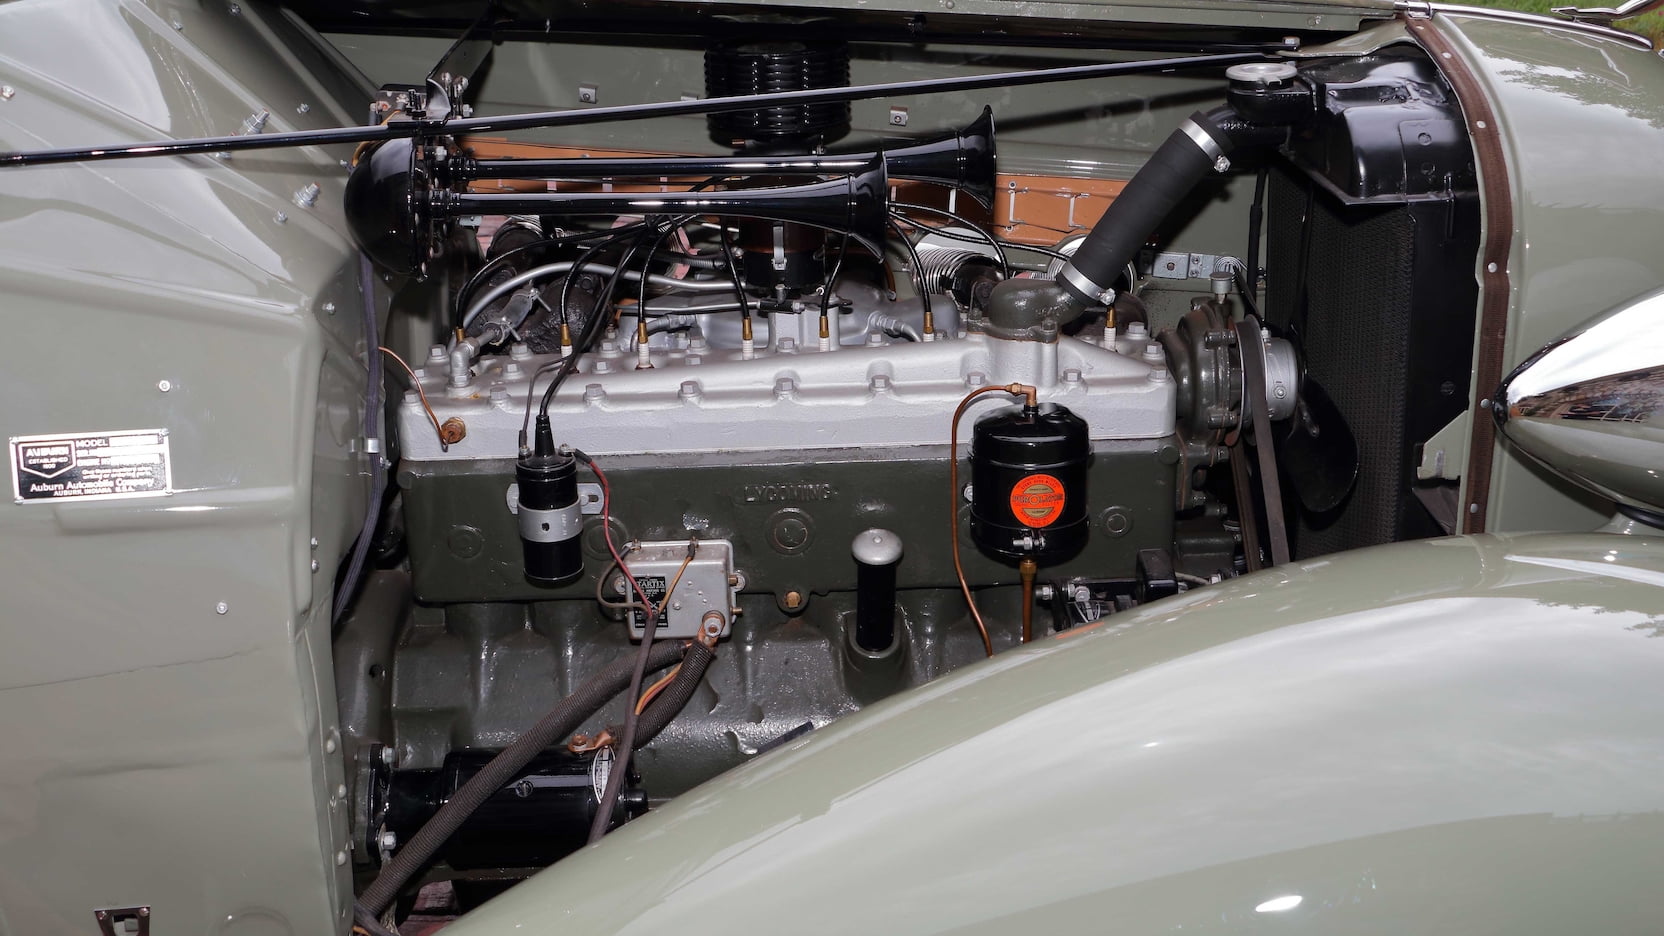 1936 Auburn 852 SC Boattail Speedster, Auburn, Auburn Speedster